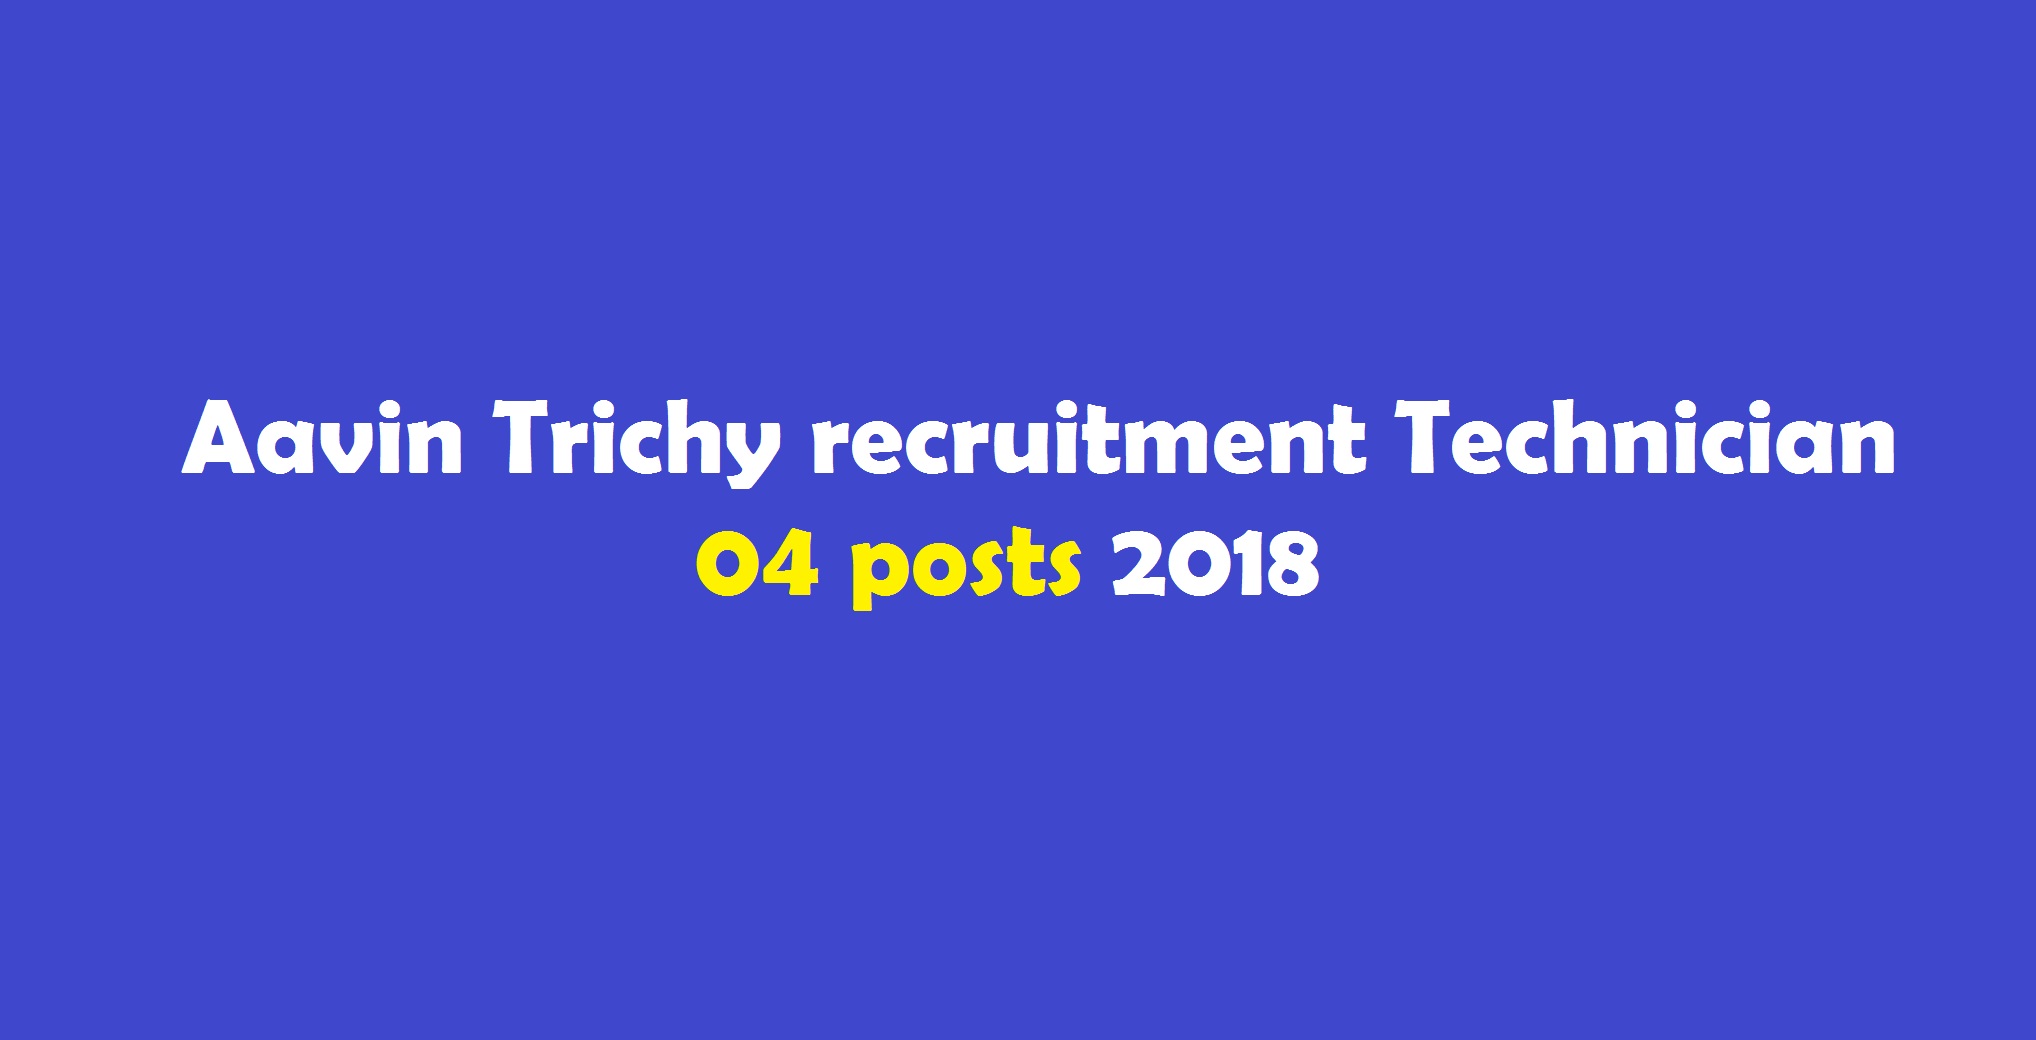 Aavin Trichy recruitment Technician posts 2018